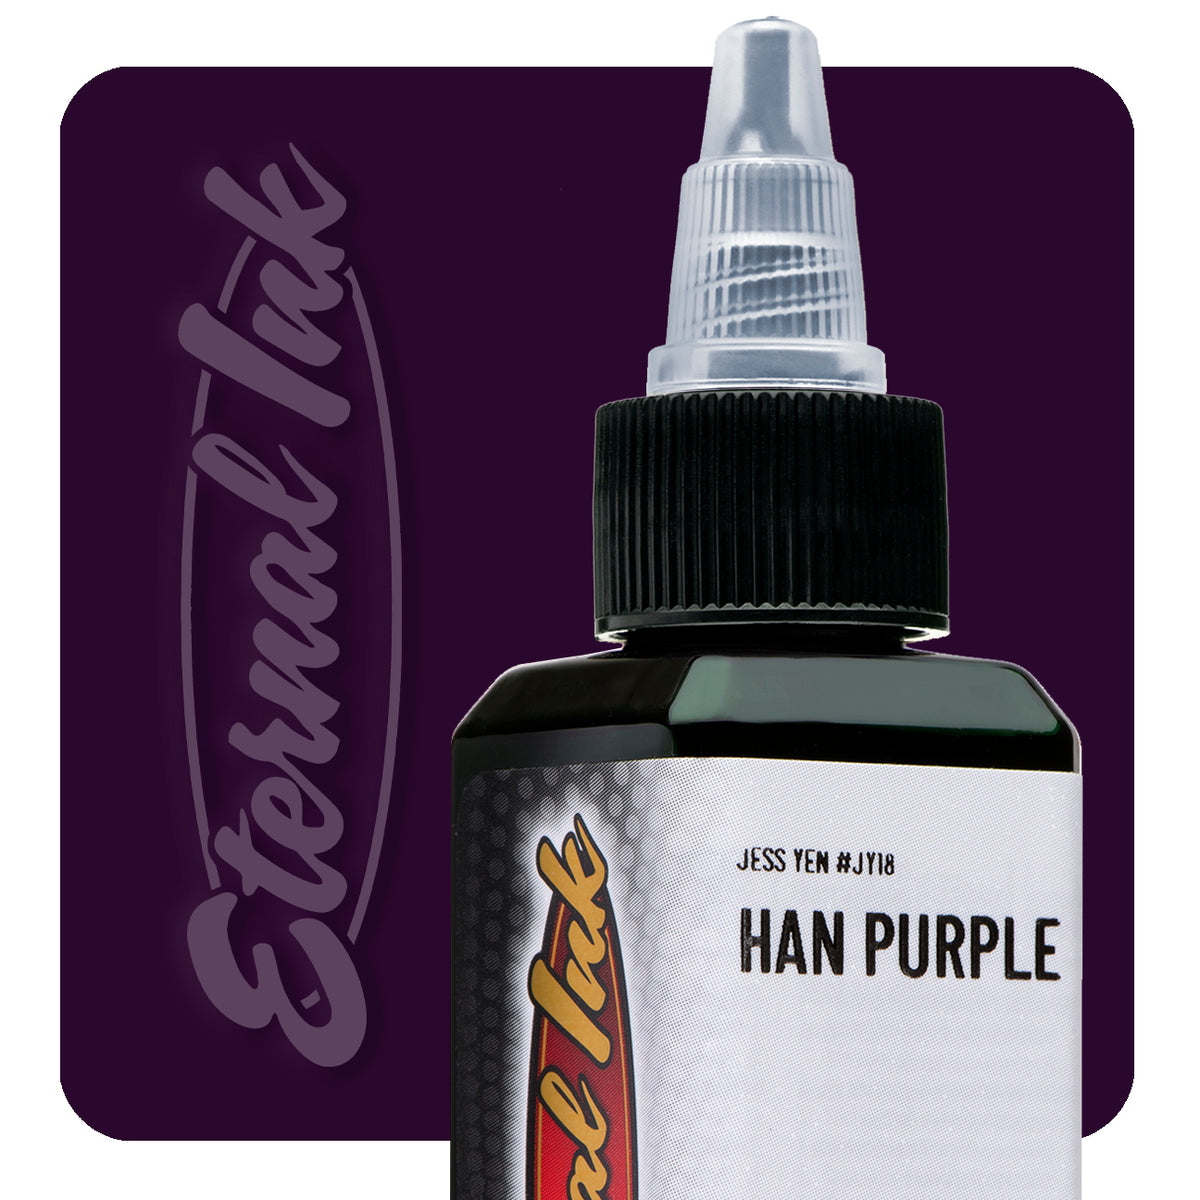 Han Purple